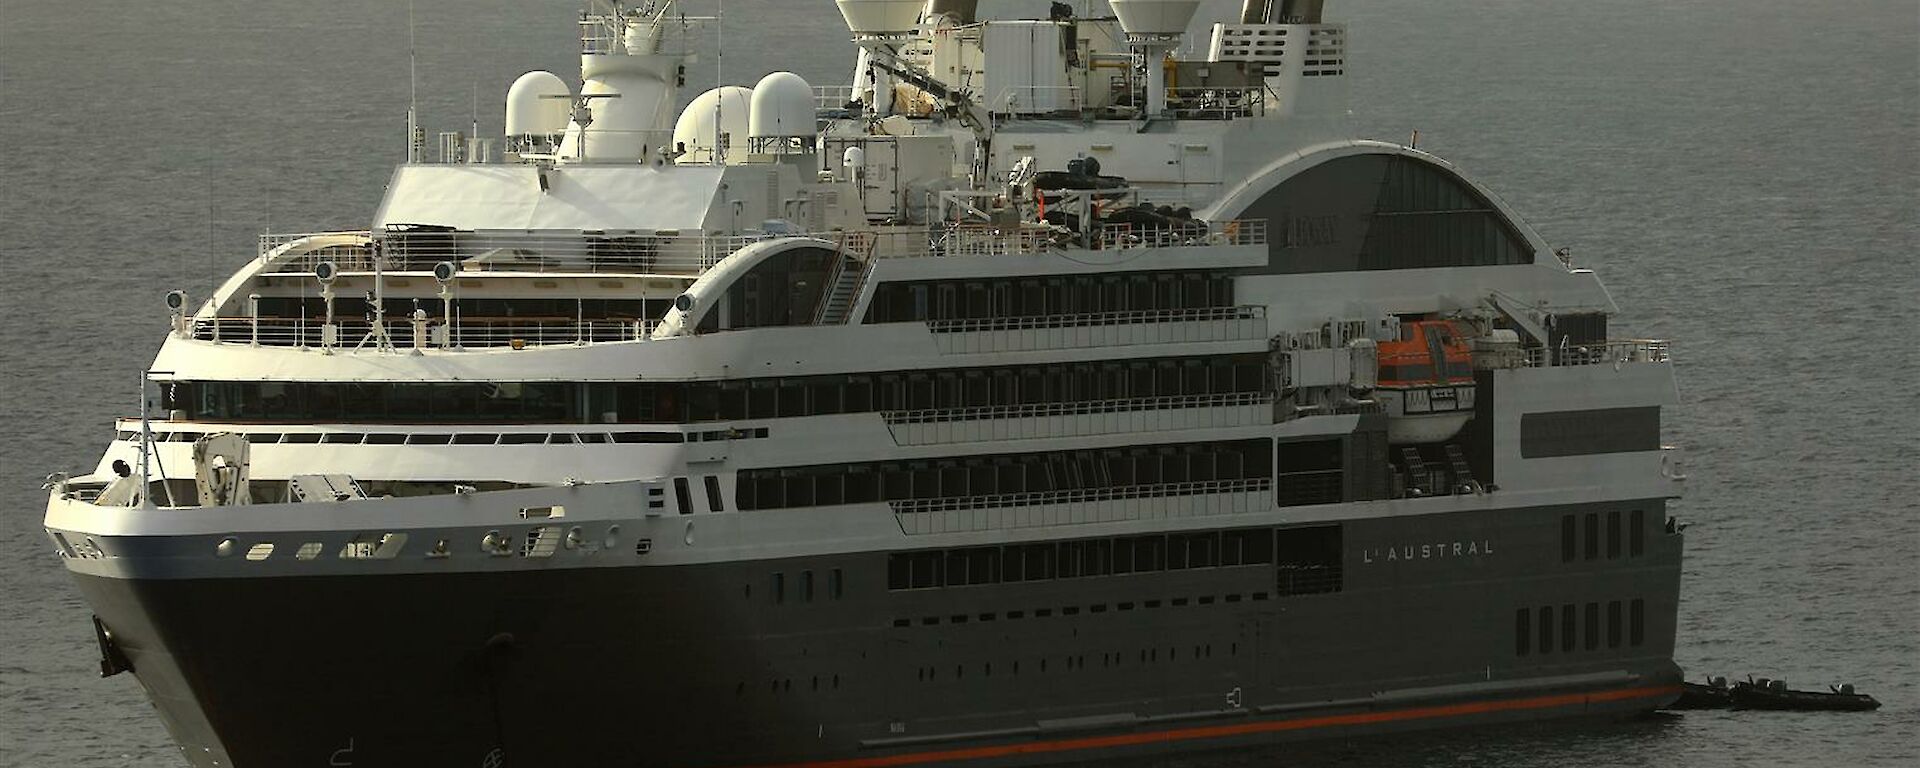 A large grey cruise ship.